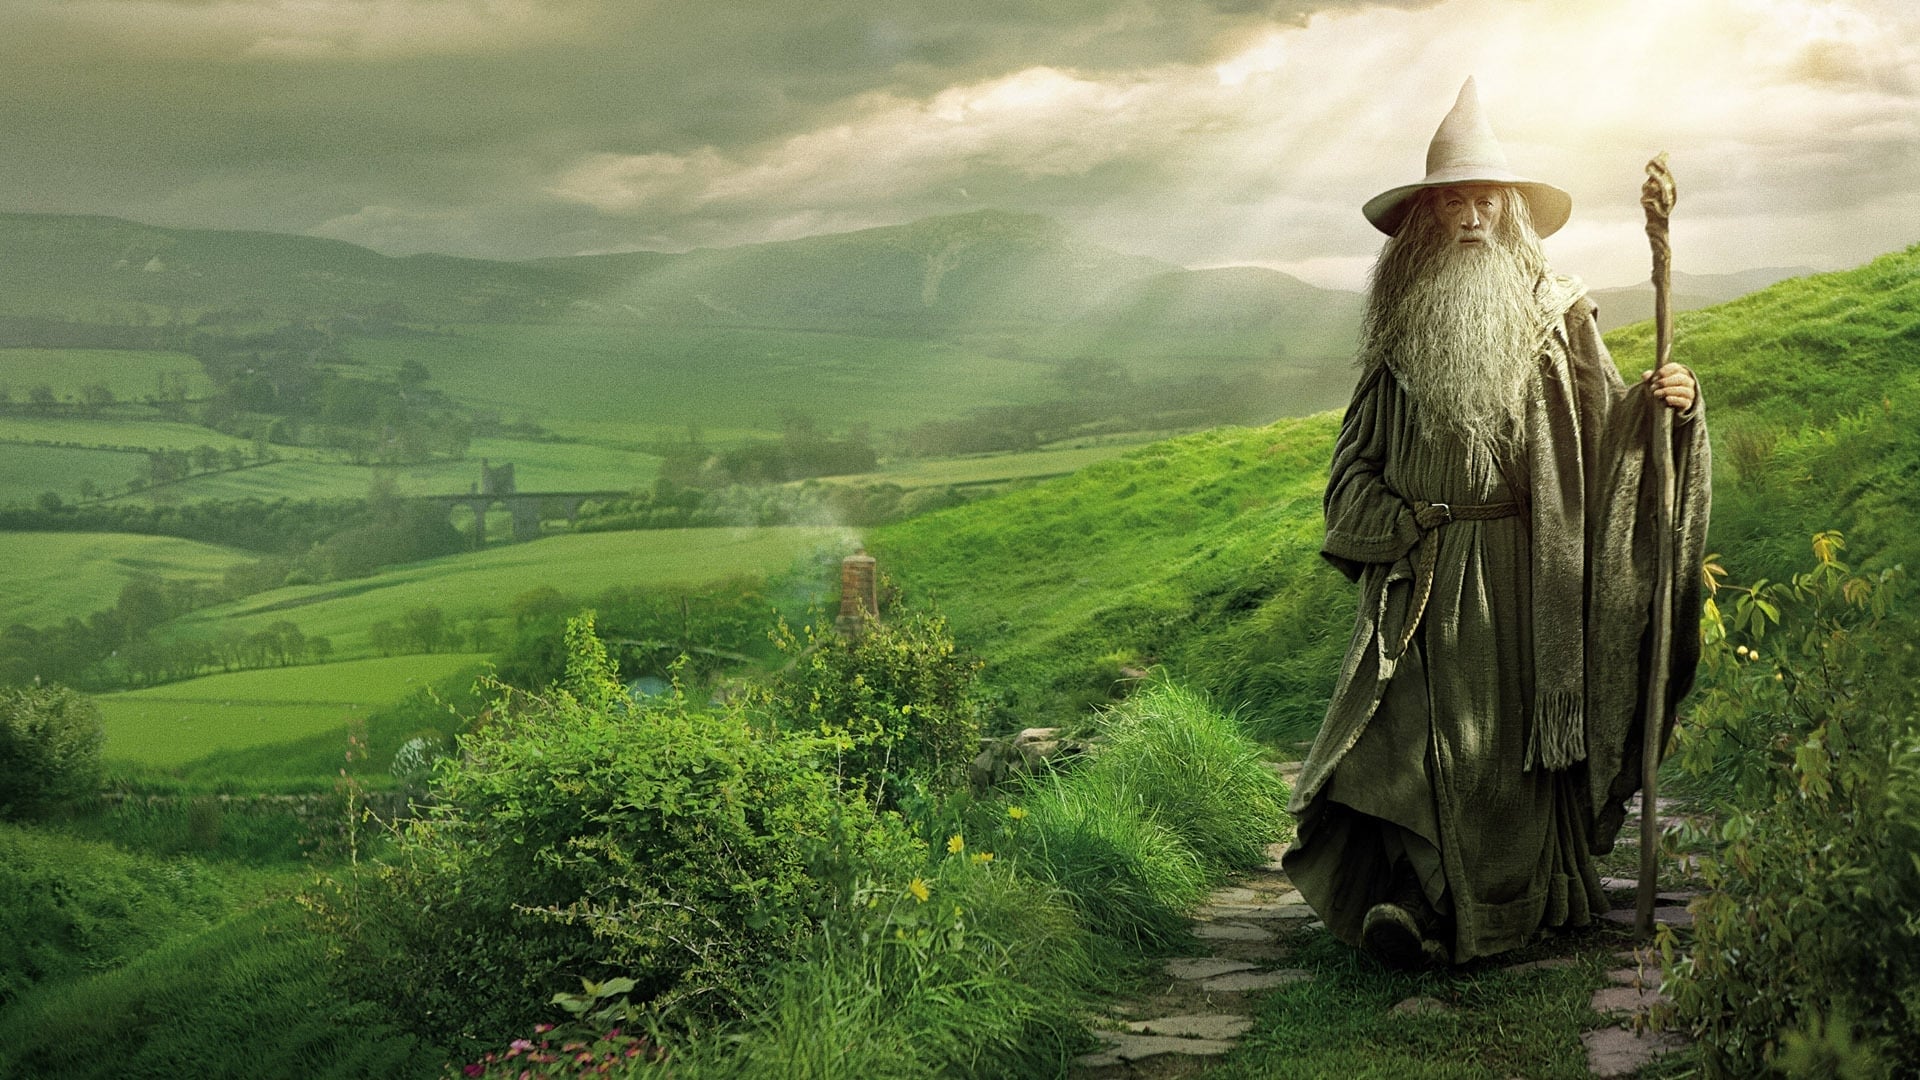 El Hobbit: Un Viaje Inesperado (2012) EXTENDED DVDRIP LATINO